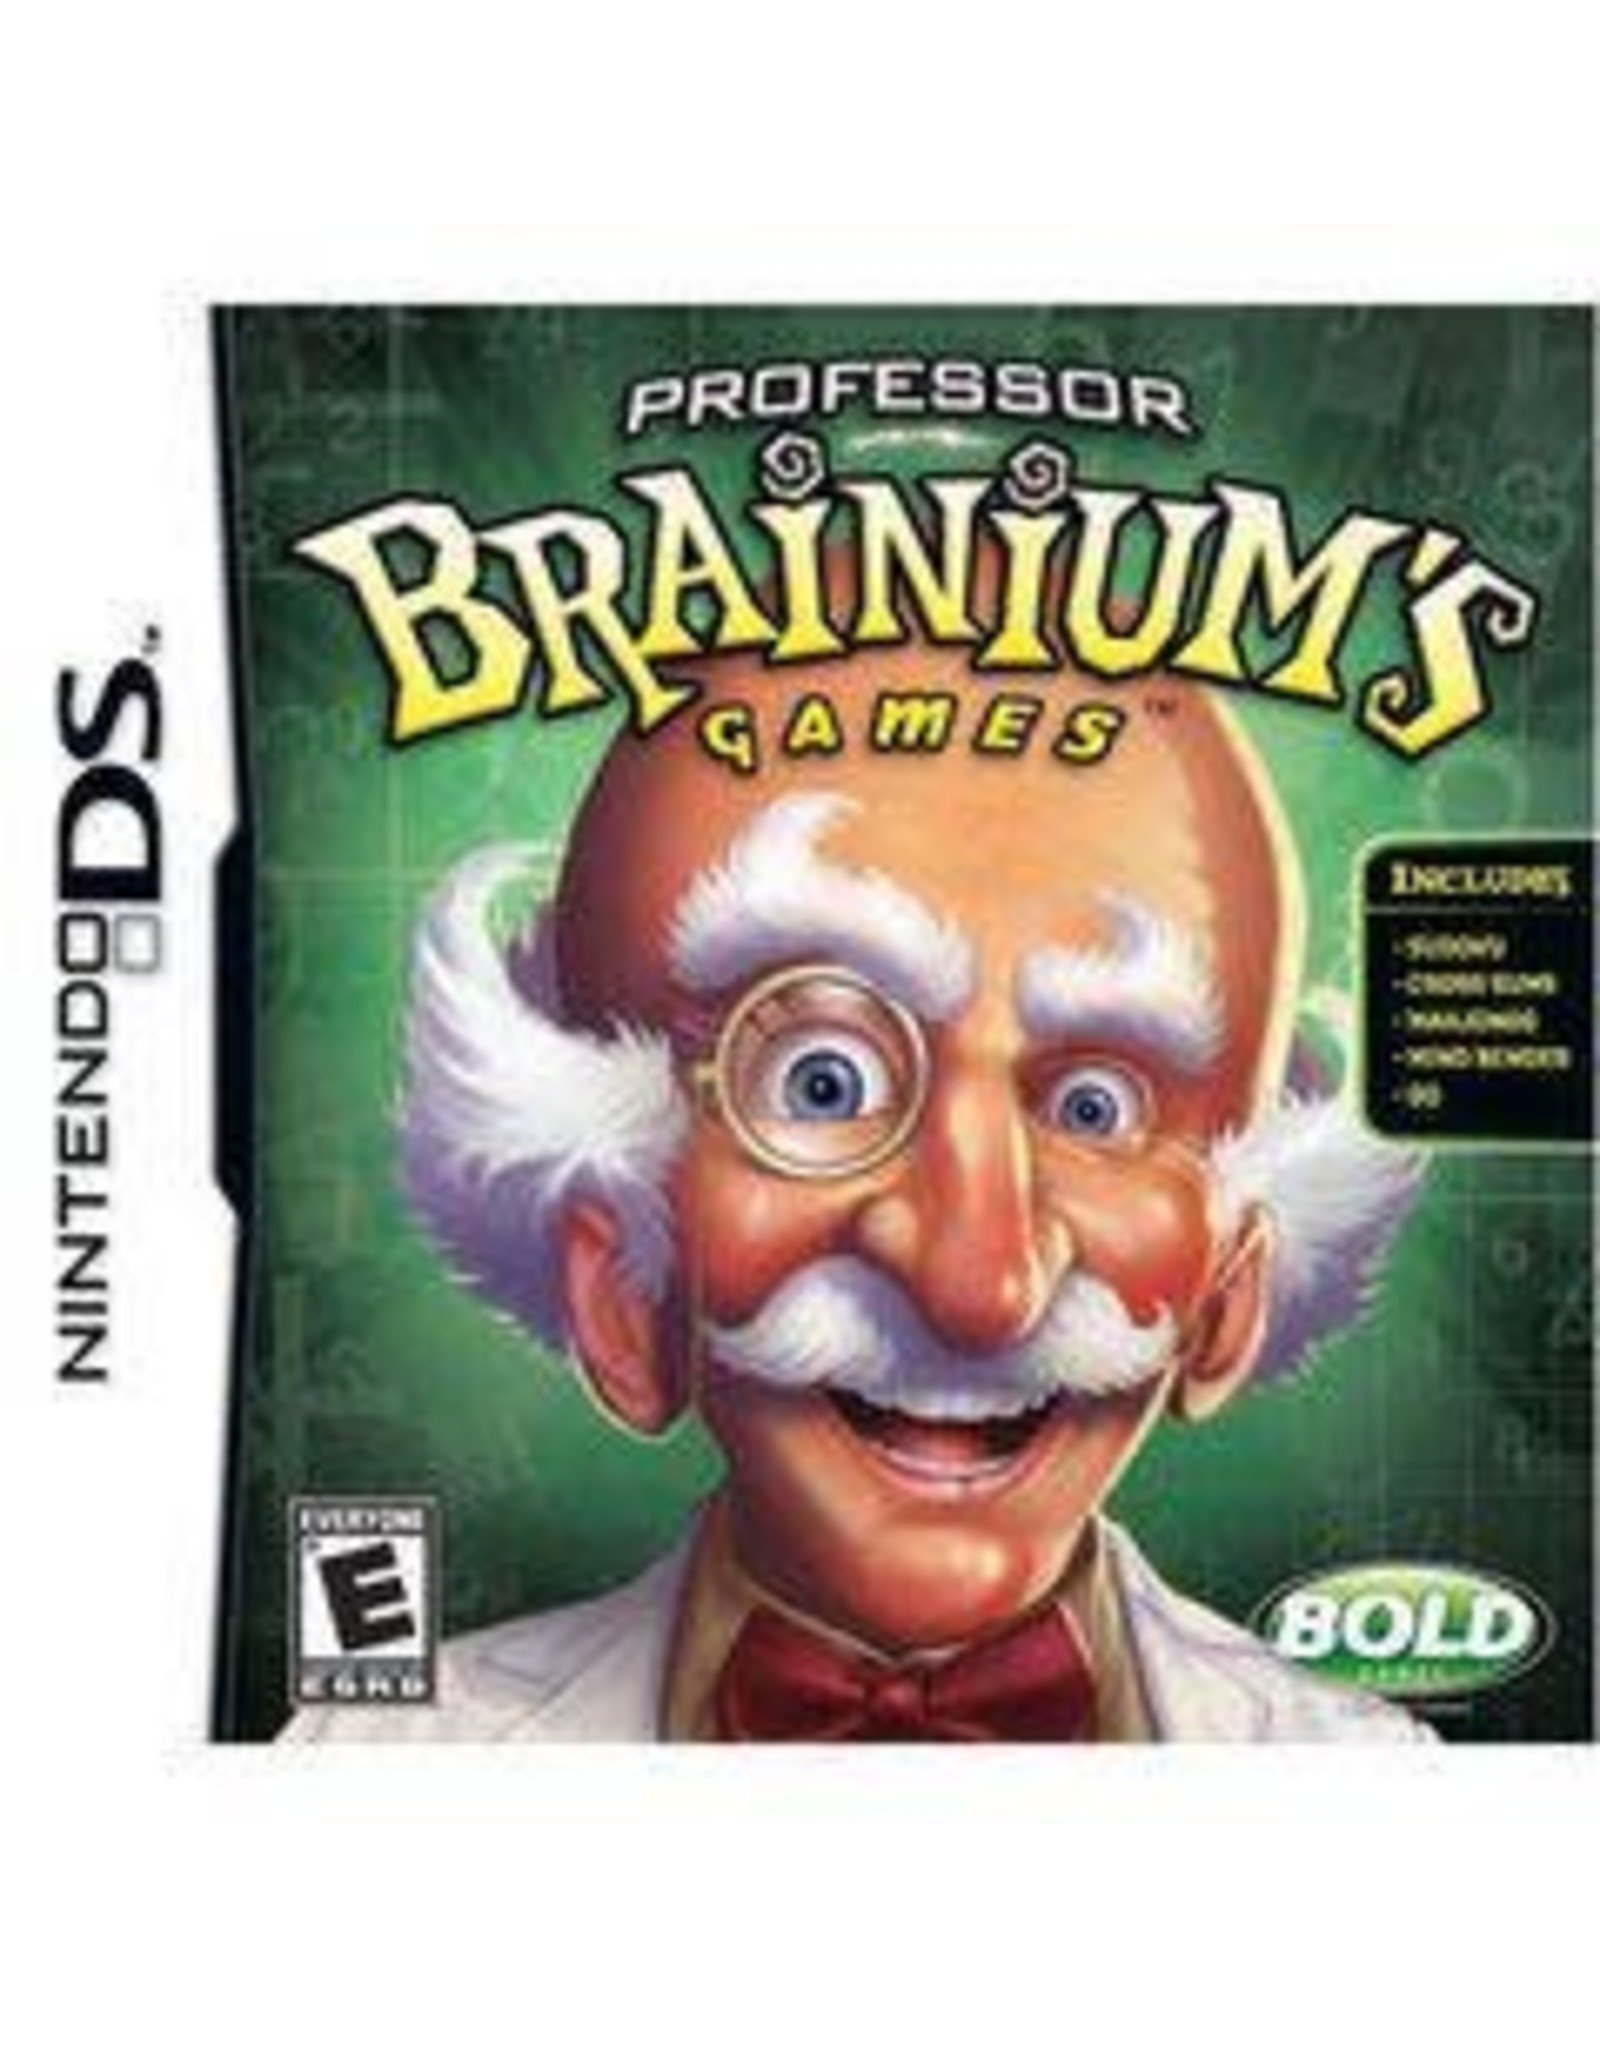 Nintendo DS Professor Brainium's Games (CiB)